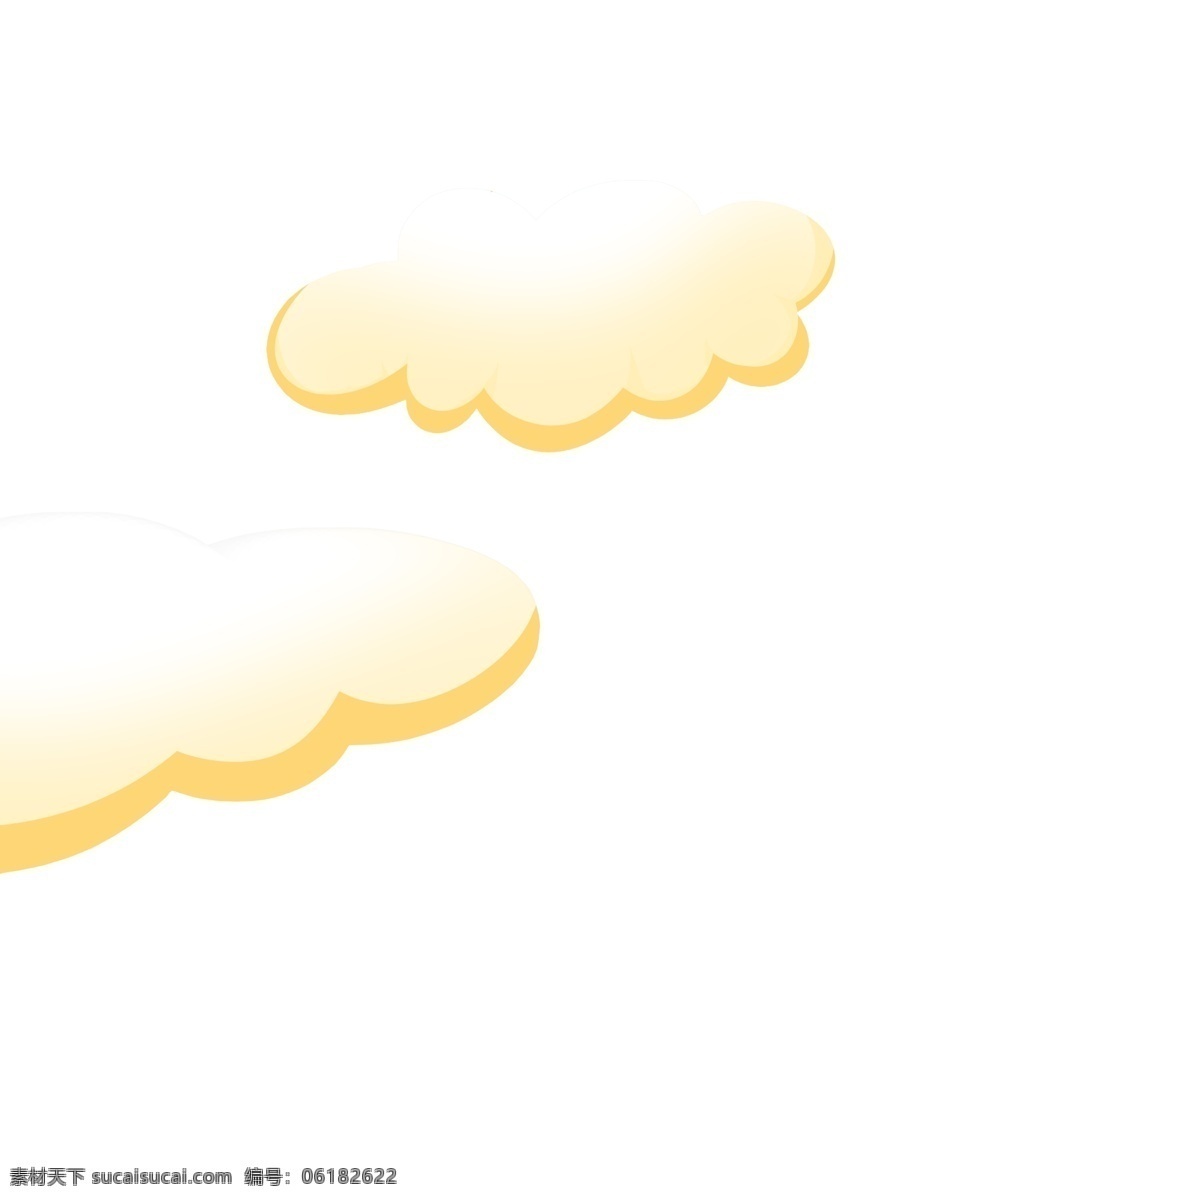 黄色 云朵 免 抠 图 天空白云 时尚云朵 漂亮的云朵 卡通图案 卡通插画 时尚云彩 黄色的云朵 免抠图